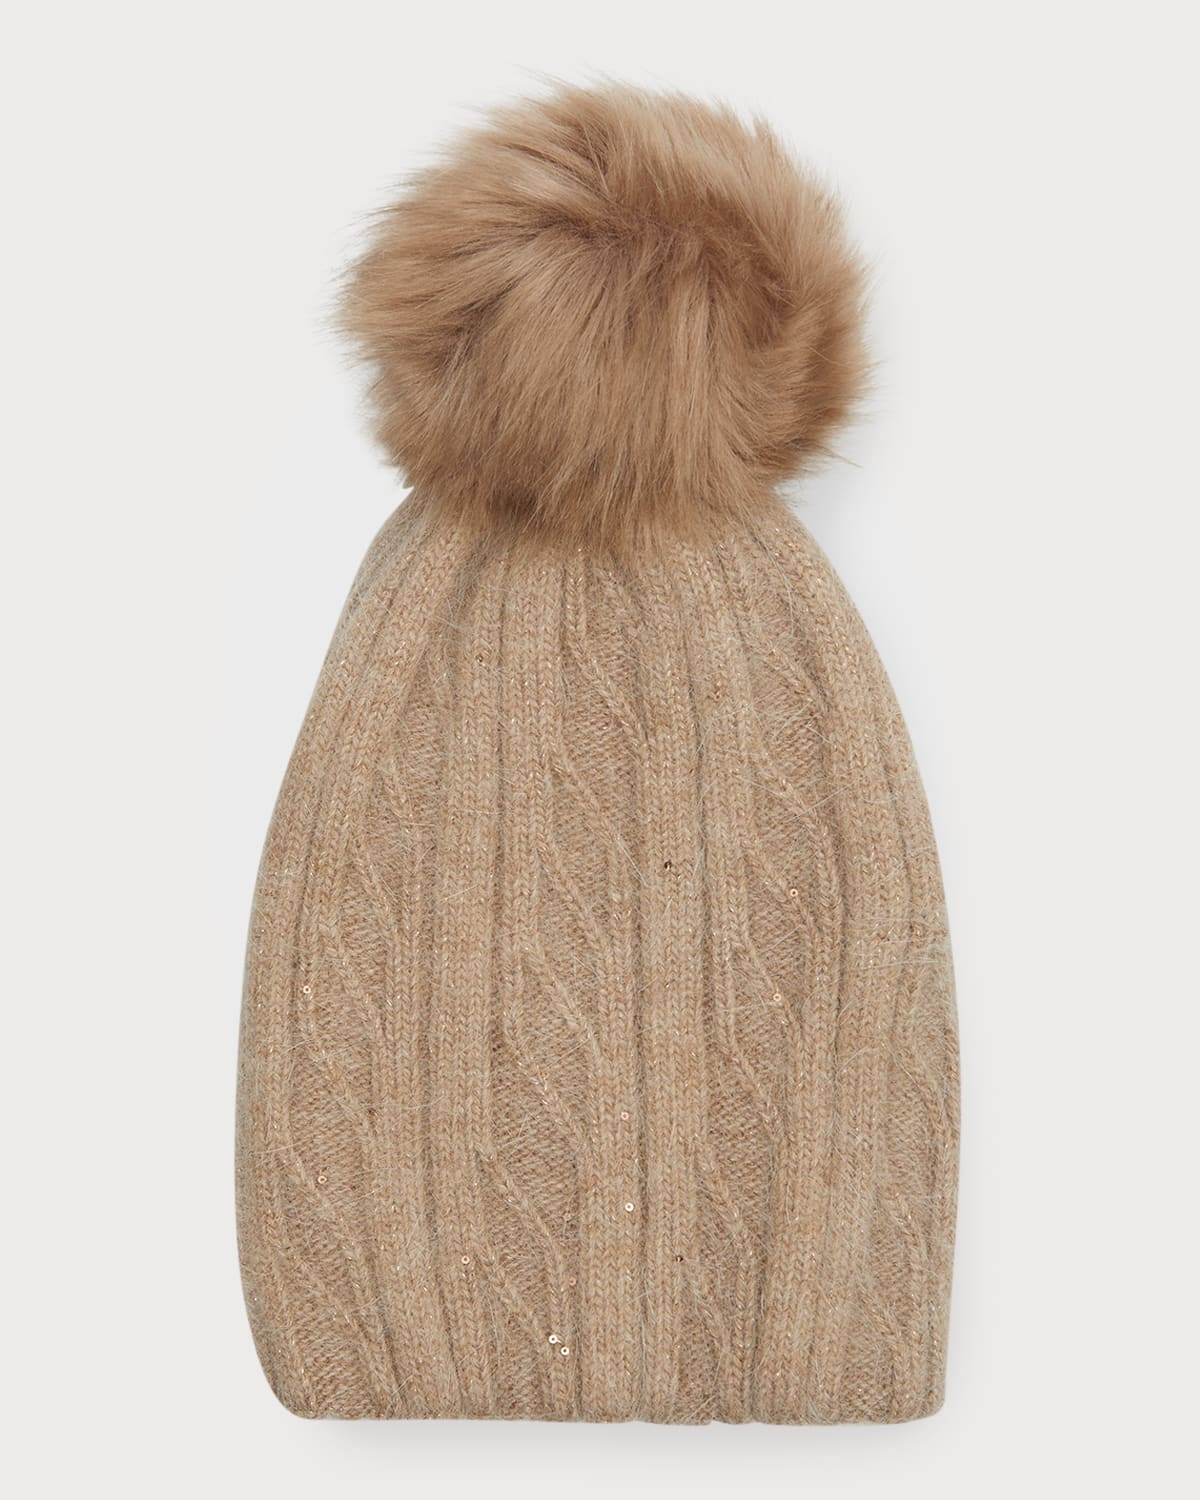 Knit Wool Beanie W/ Faux Fur Pom